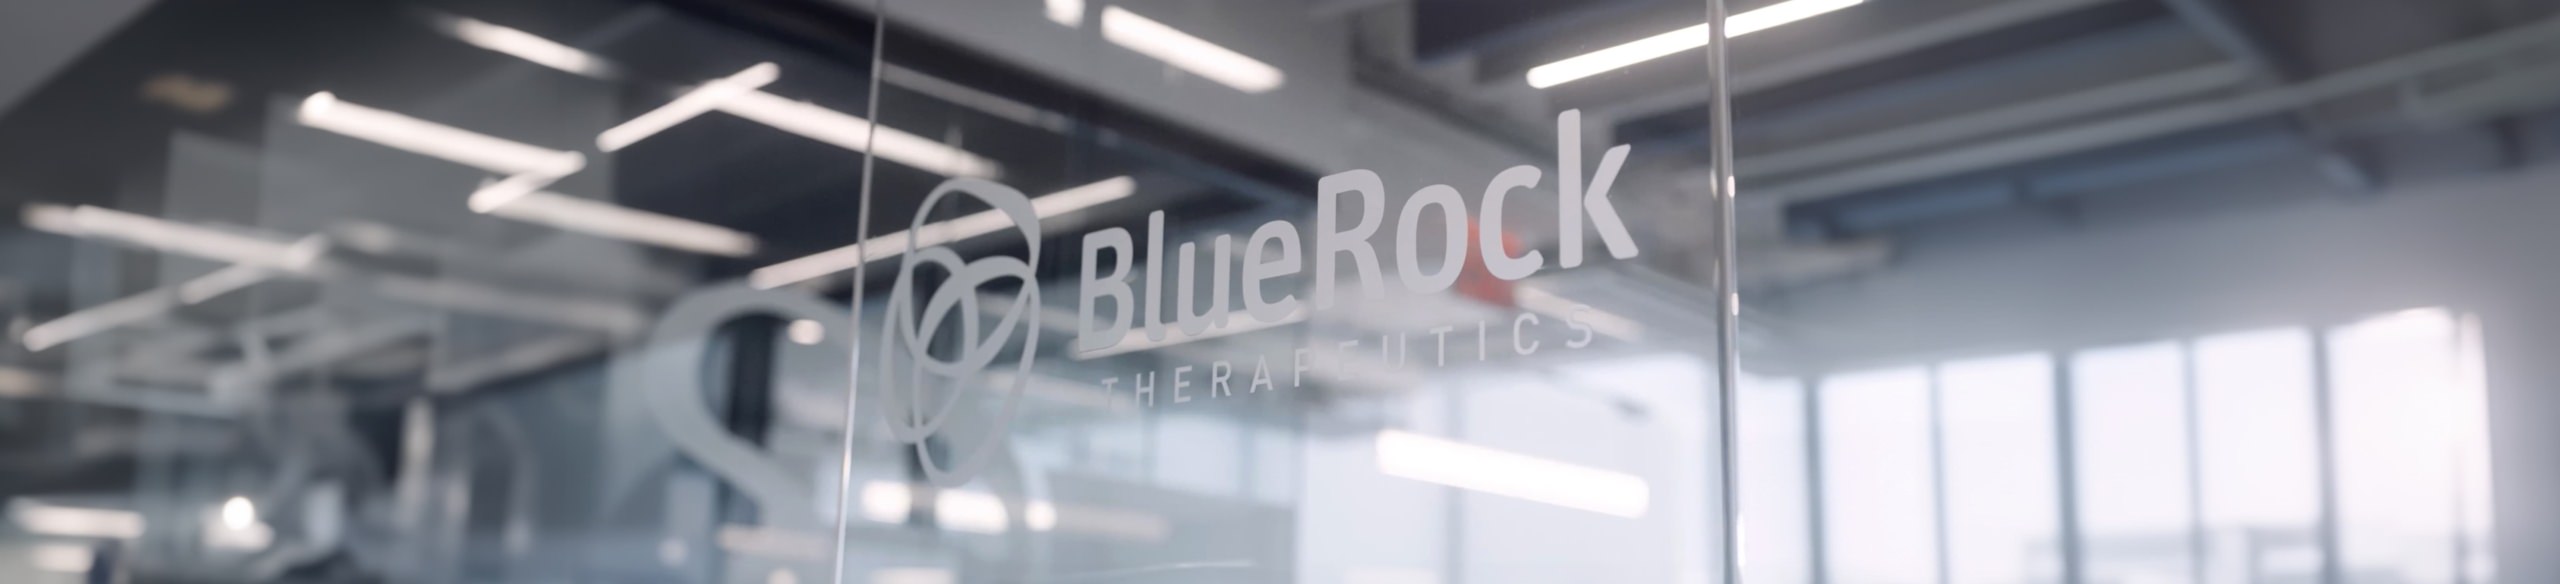 A glass door with the BlueRock logo on it in the BlueRock office